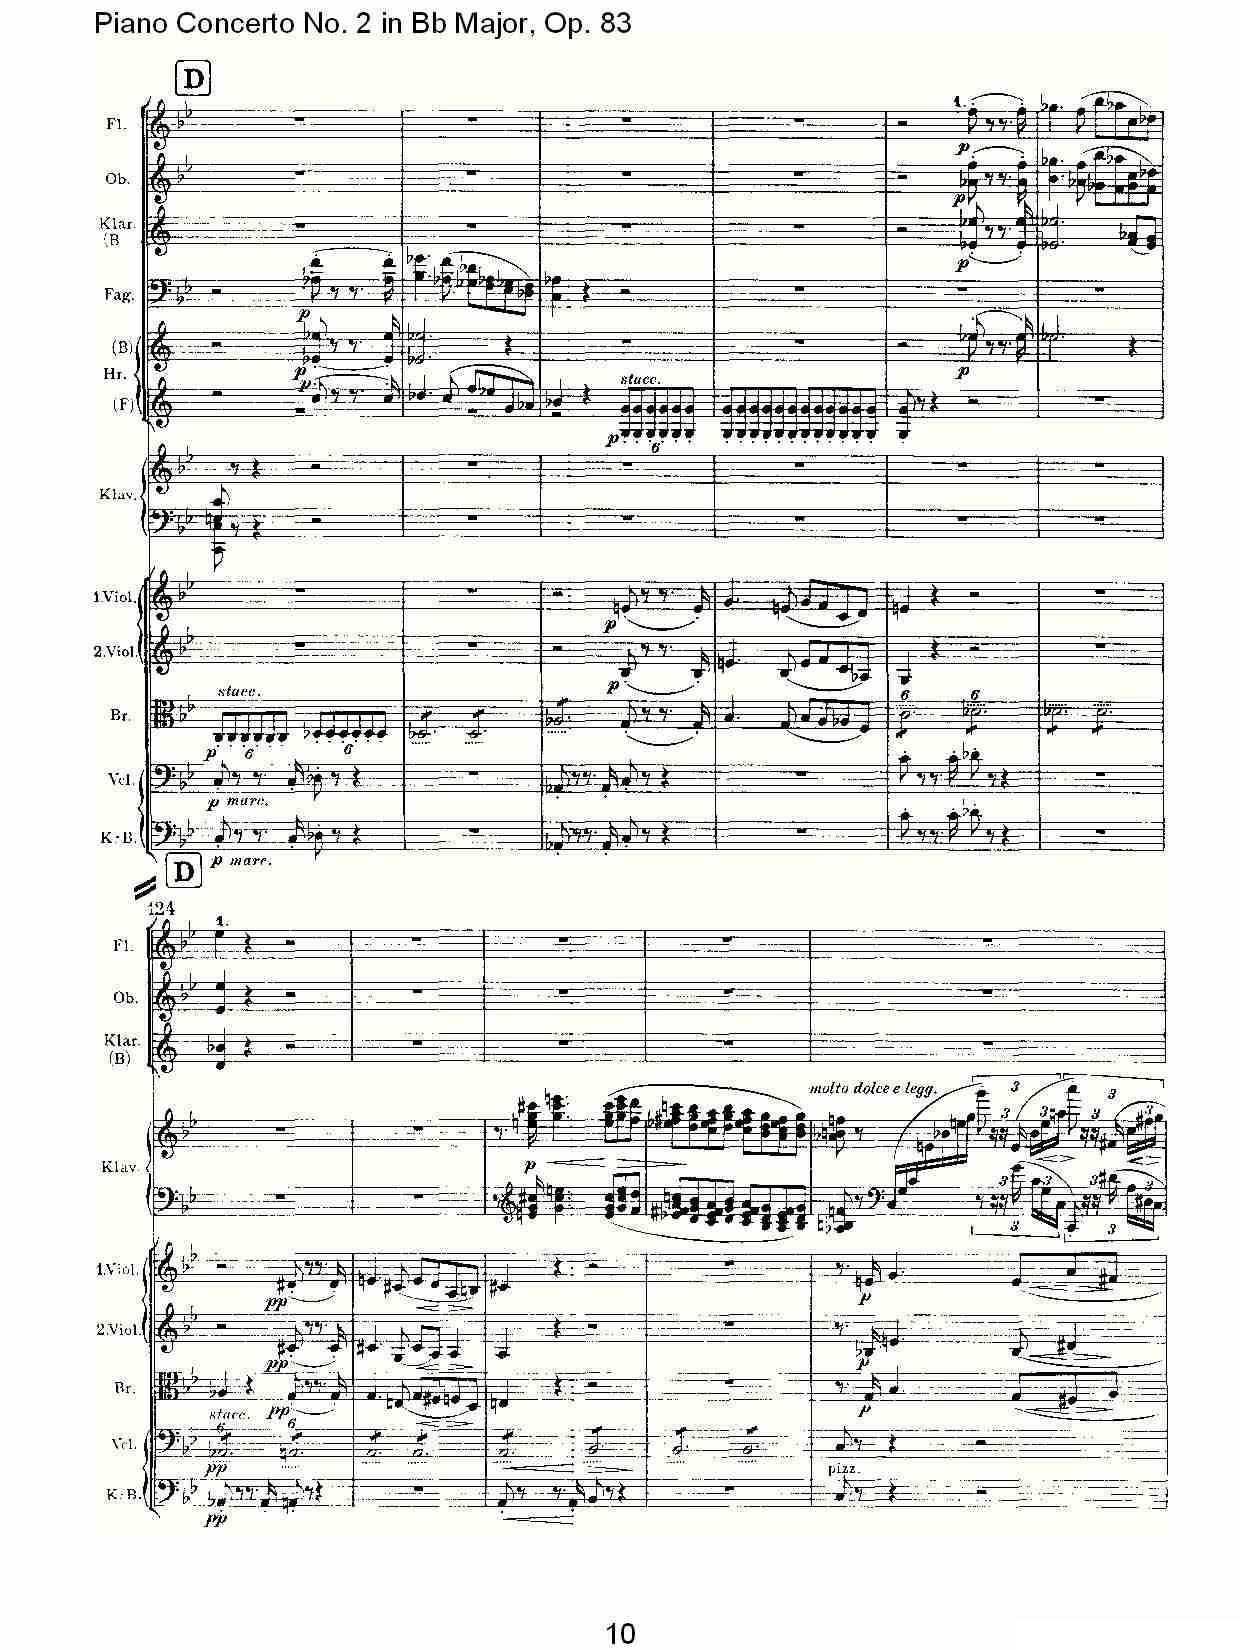 Bb大调钢琴第二协奏曲, Op.83第一乐章（一）钢琴曲谱（图11）